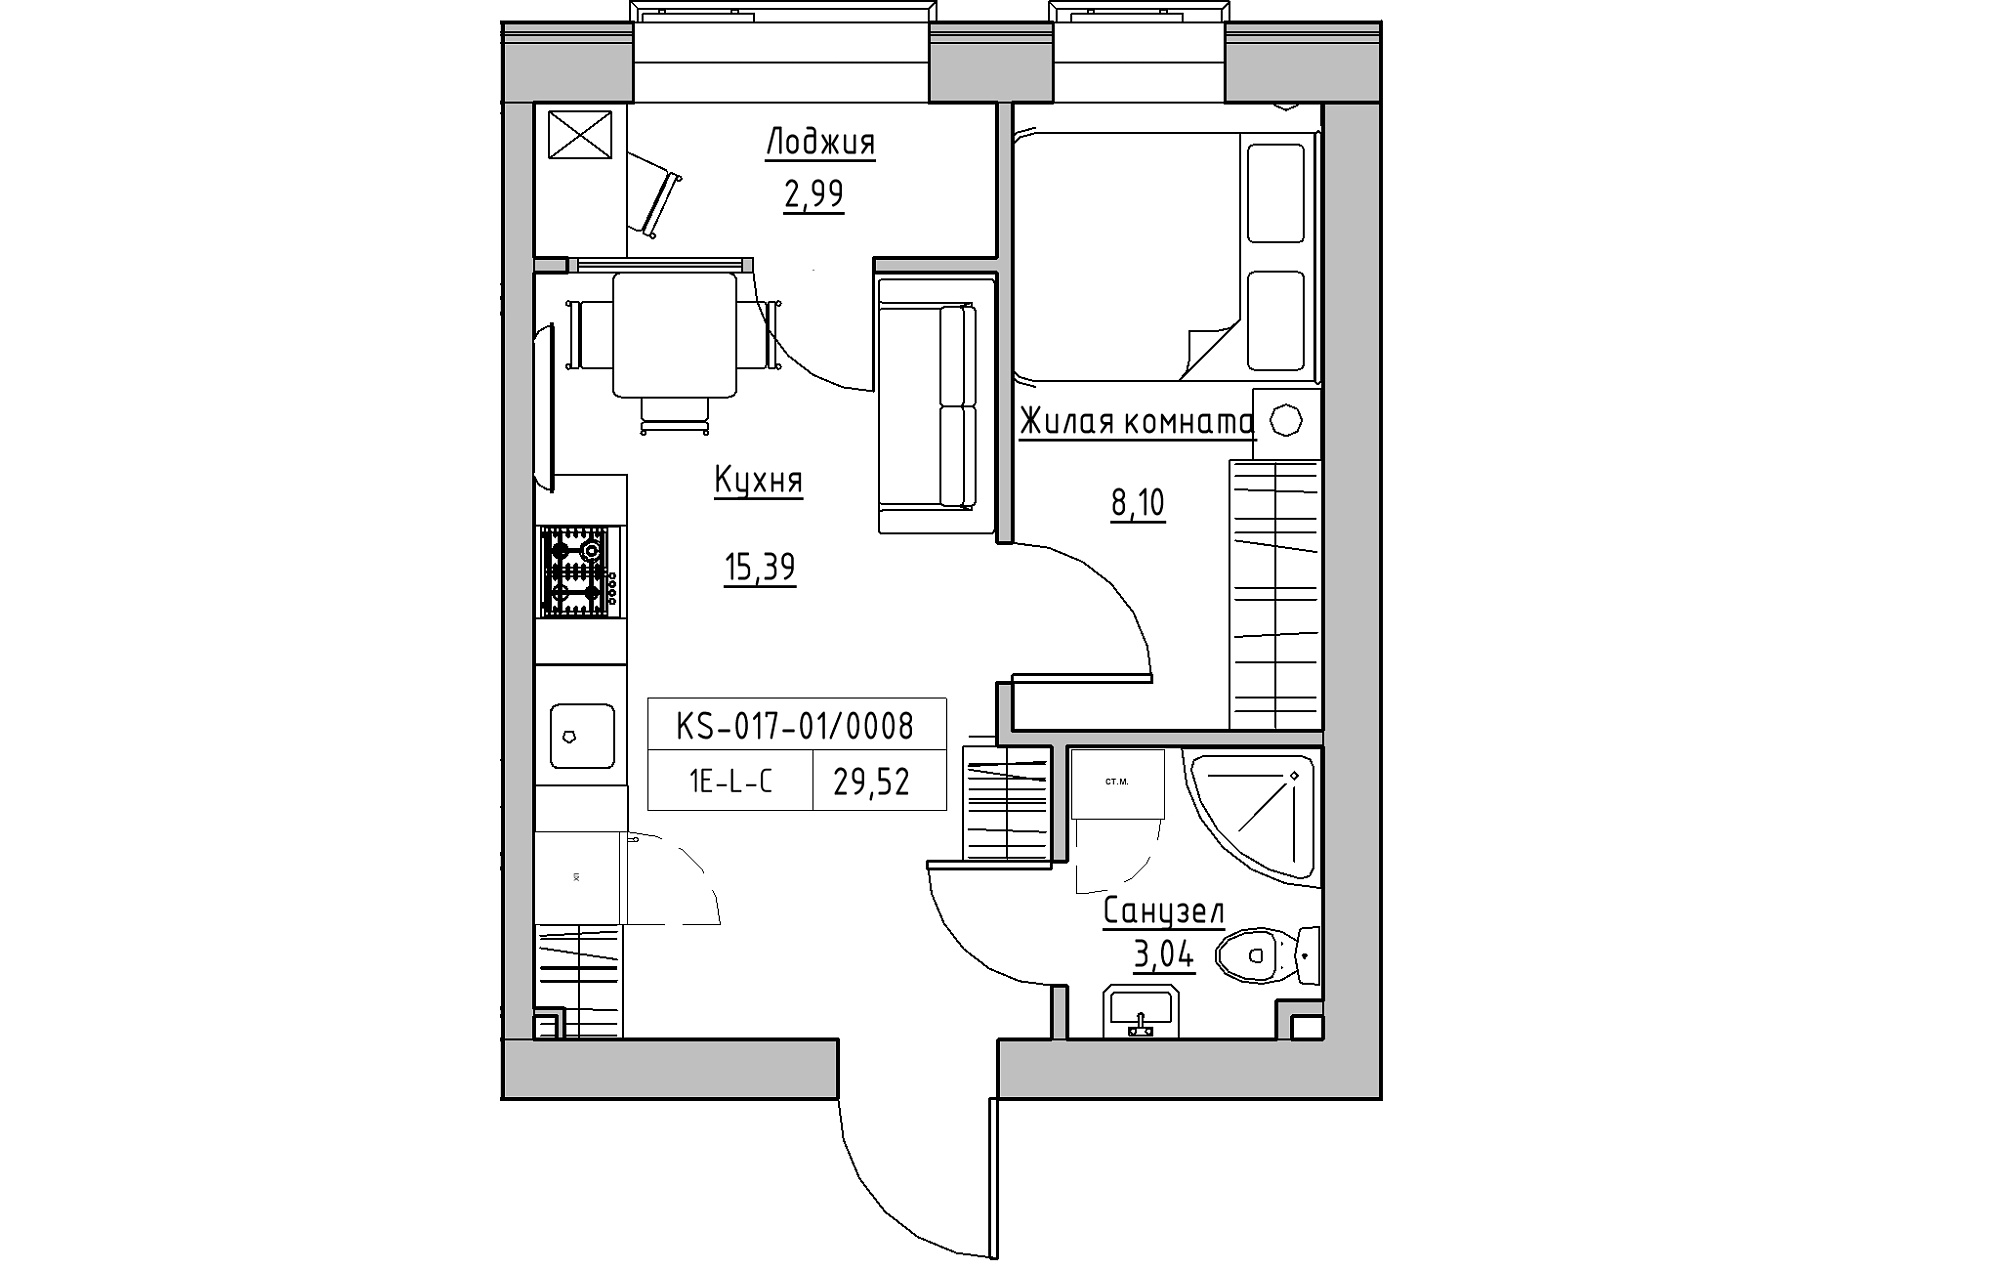 Планування 1-к квартира площею 29.52м2, KS-017-01/0008.